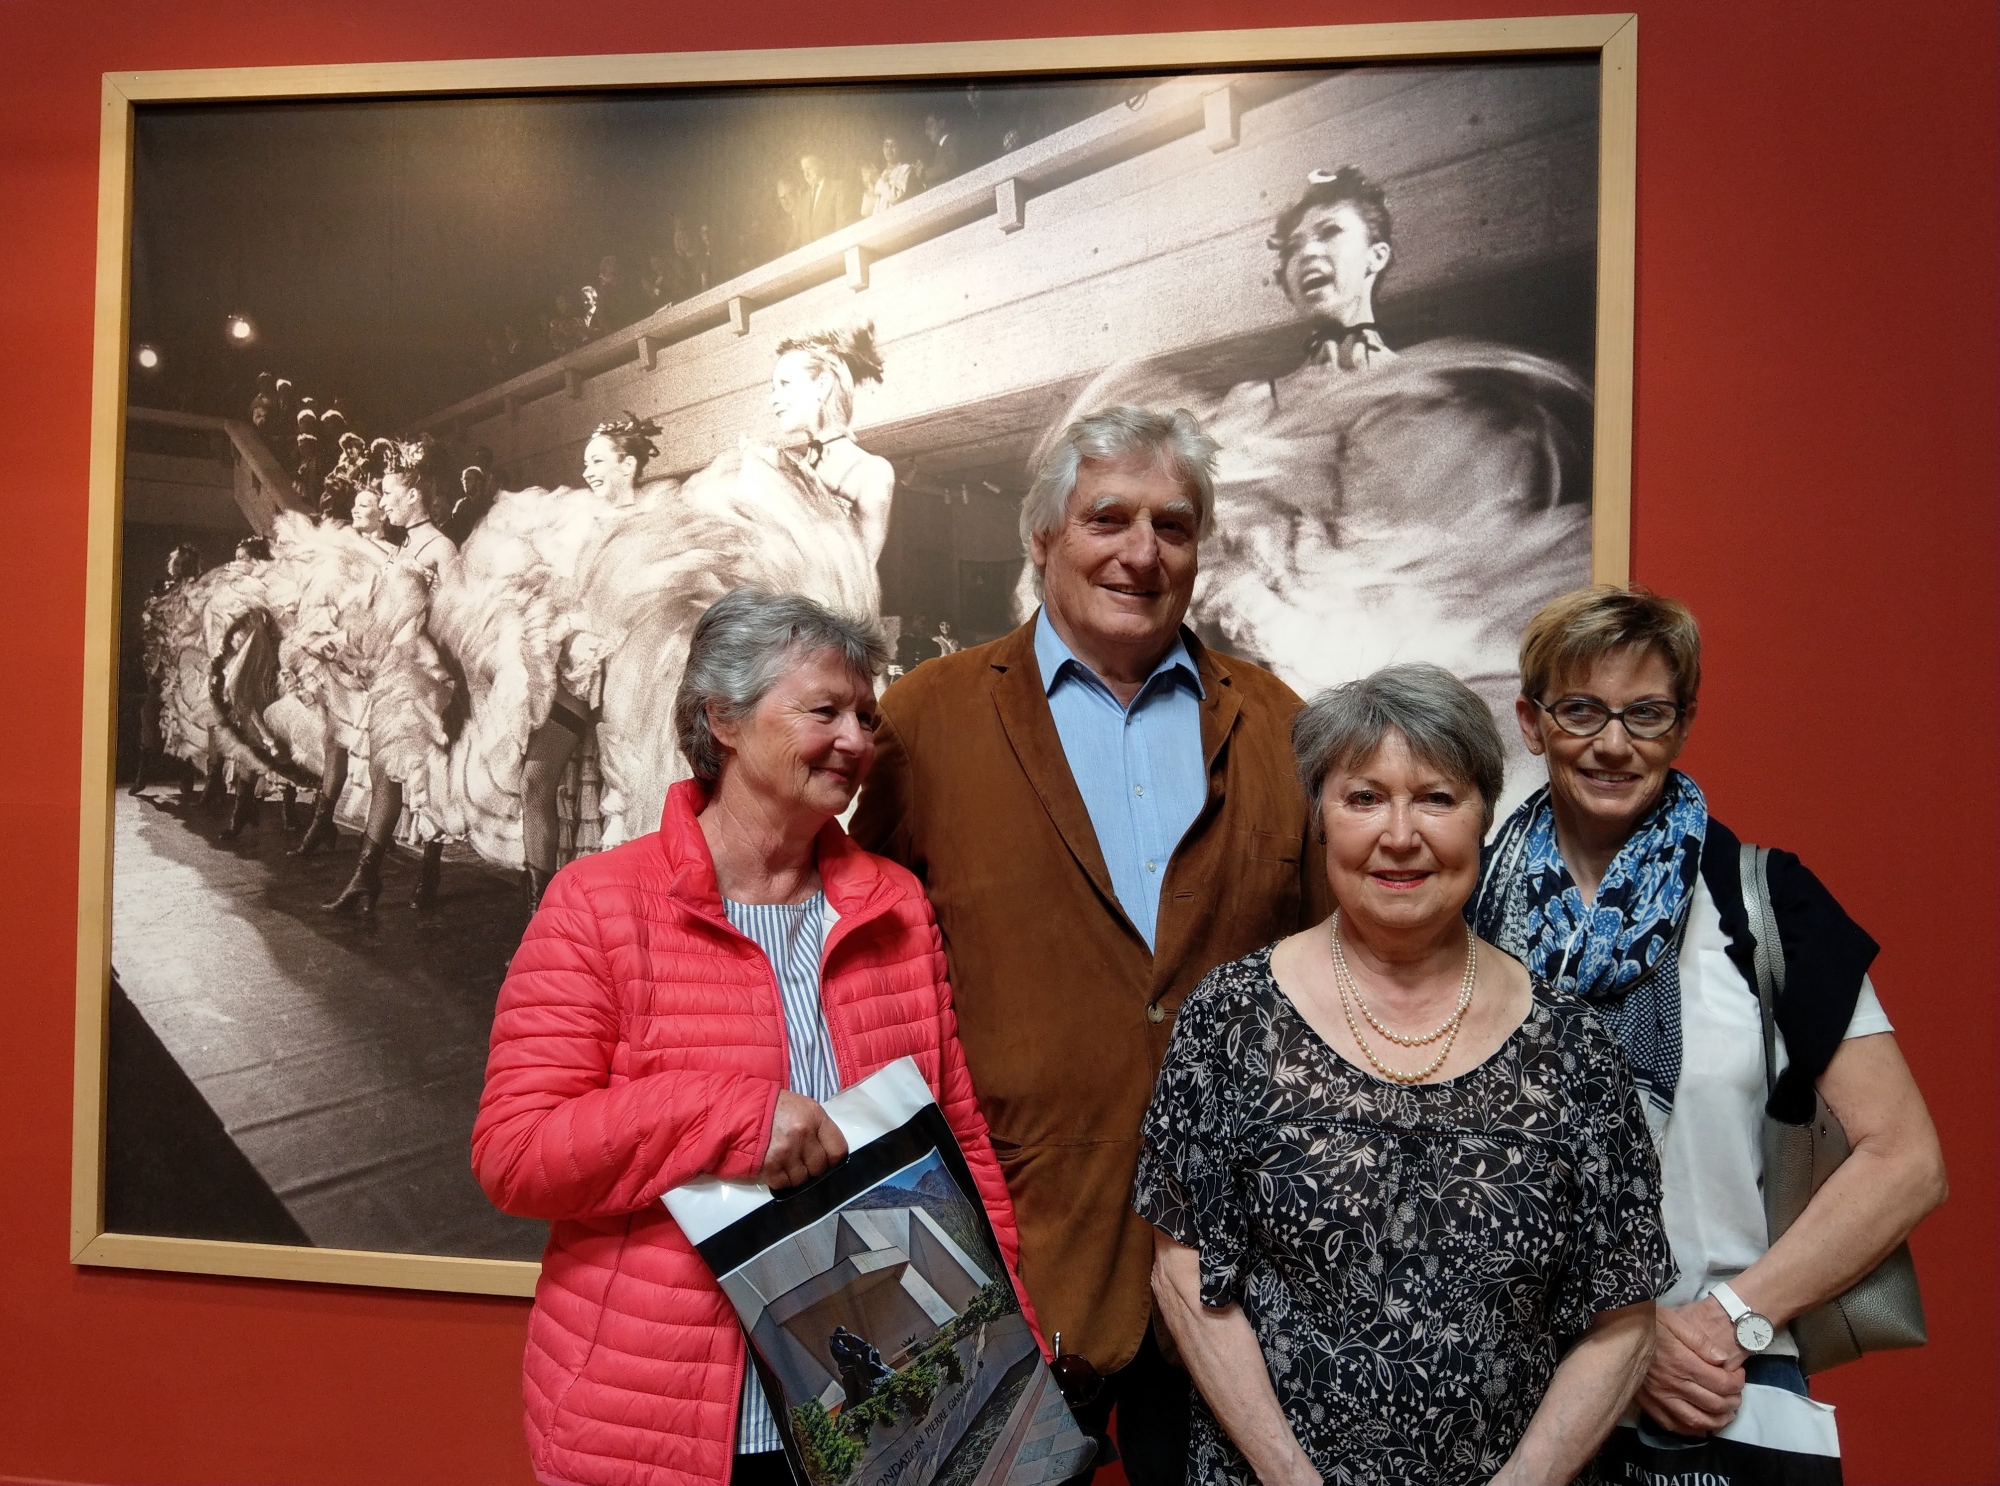 La barre des 50'000 visiteurs de l'exposition Toulouse-Lautrec a été atteinte grâce à Eve Jost (à gauche) et Romy Roch (à droite), ici en compagnie de Léonard Gianadda et de Antoinette de Wolff.